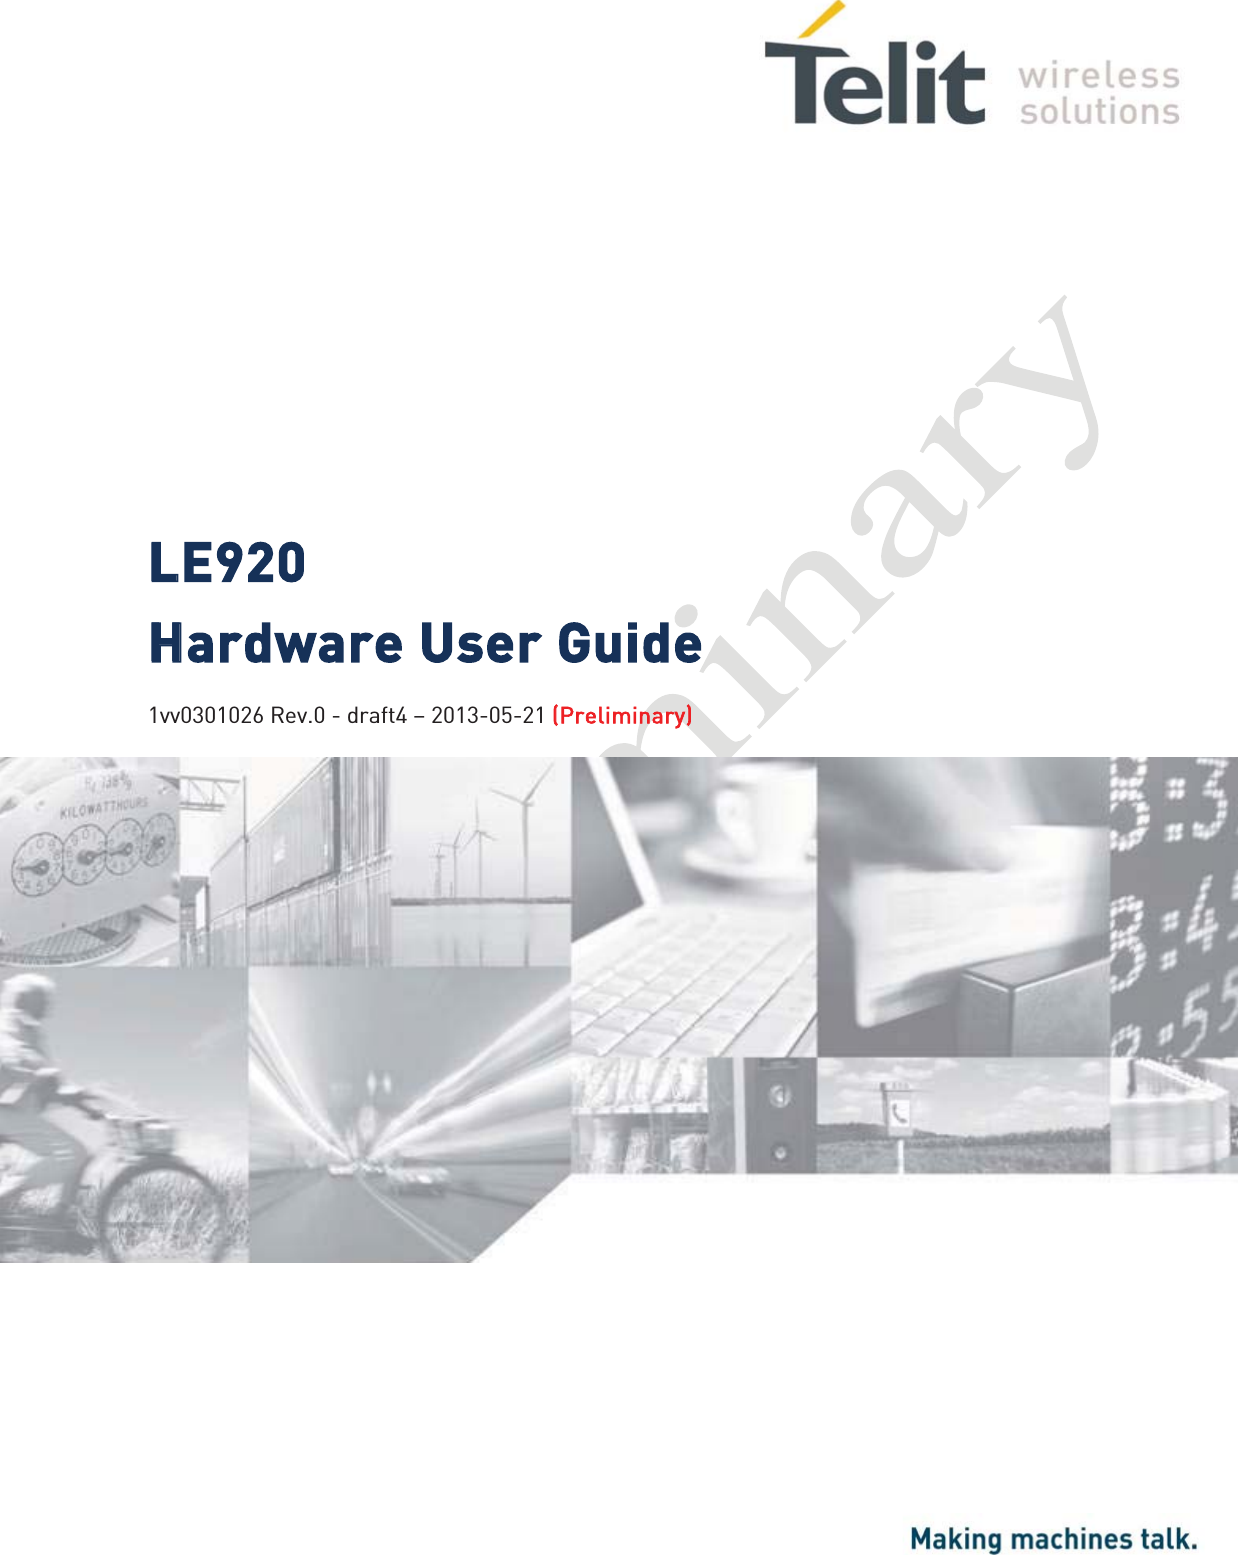    LLE920  HHardware User Guide   1vv0301026 Rev.0 - draft4 – 2013-05-21 ((Preliminary) 